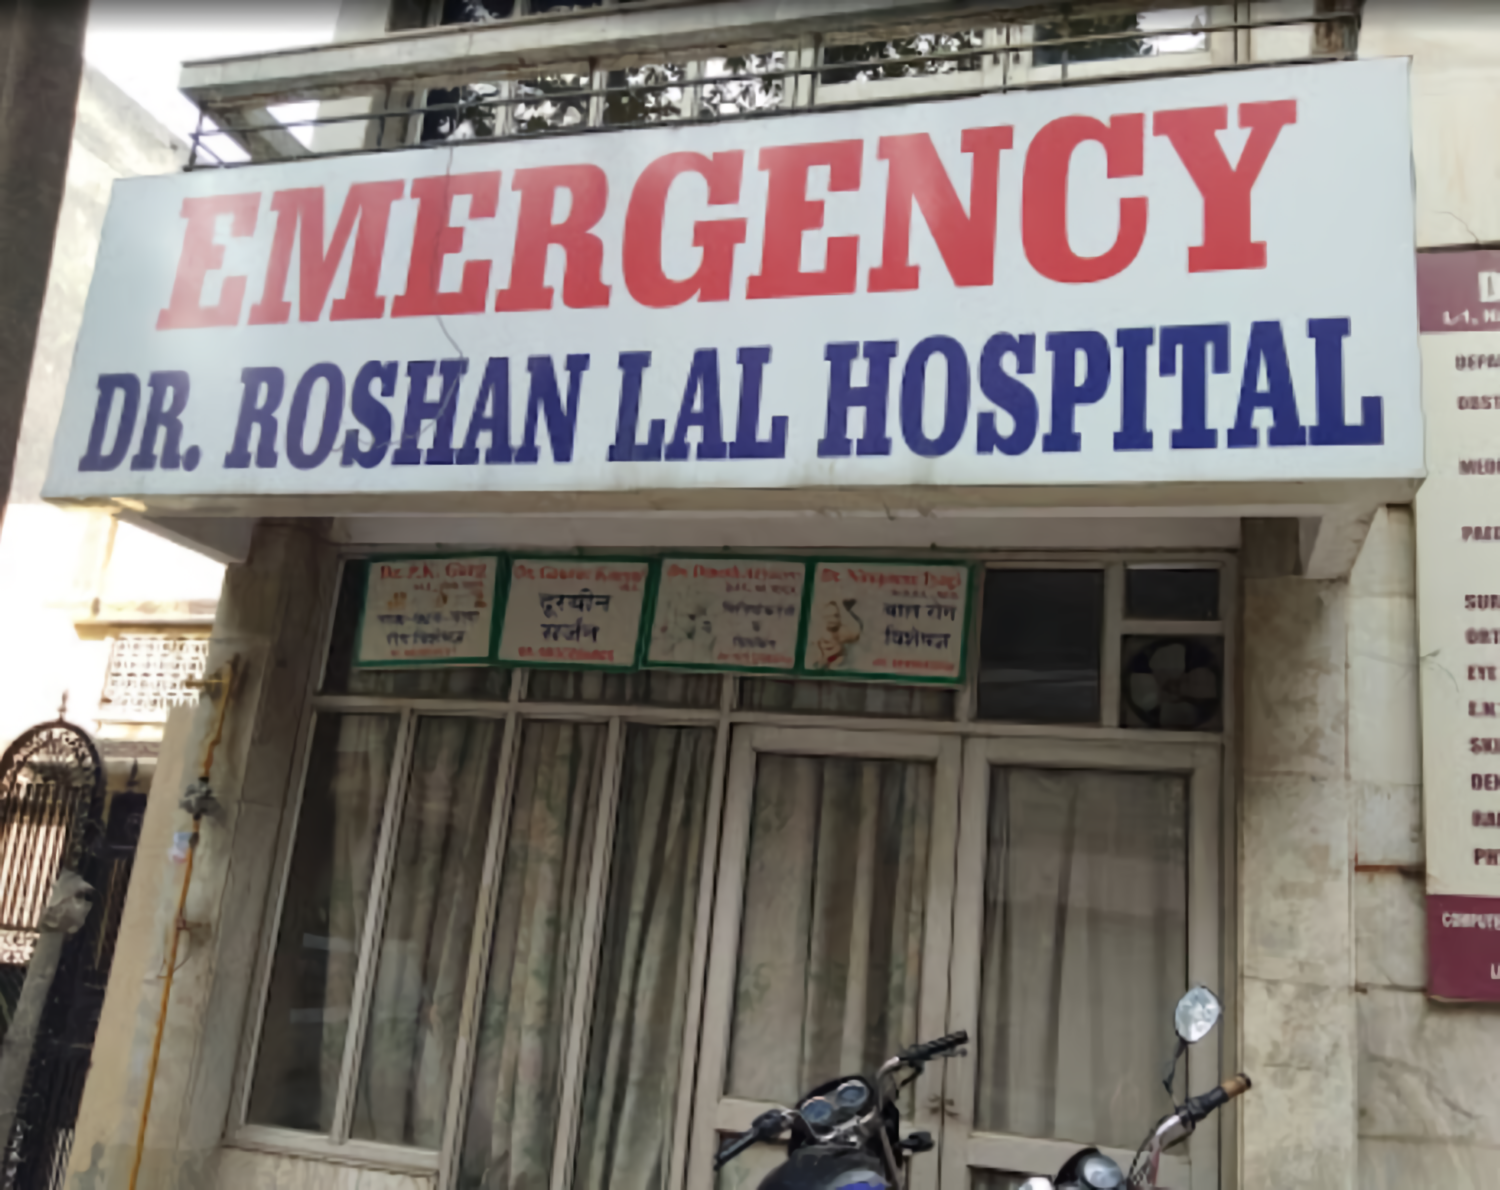 Dr. Roshan Lal Hospital photo